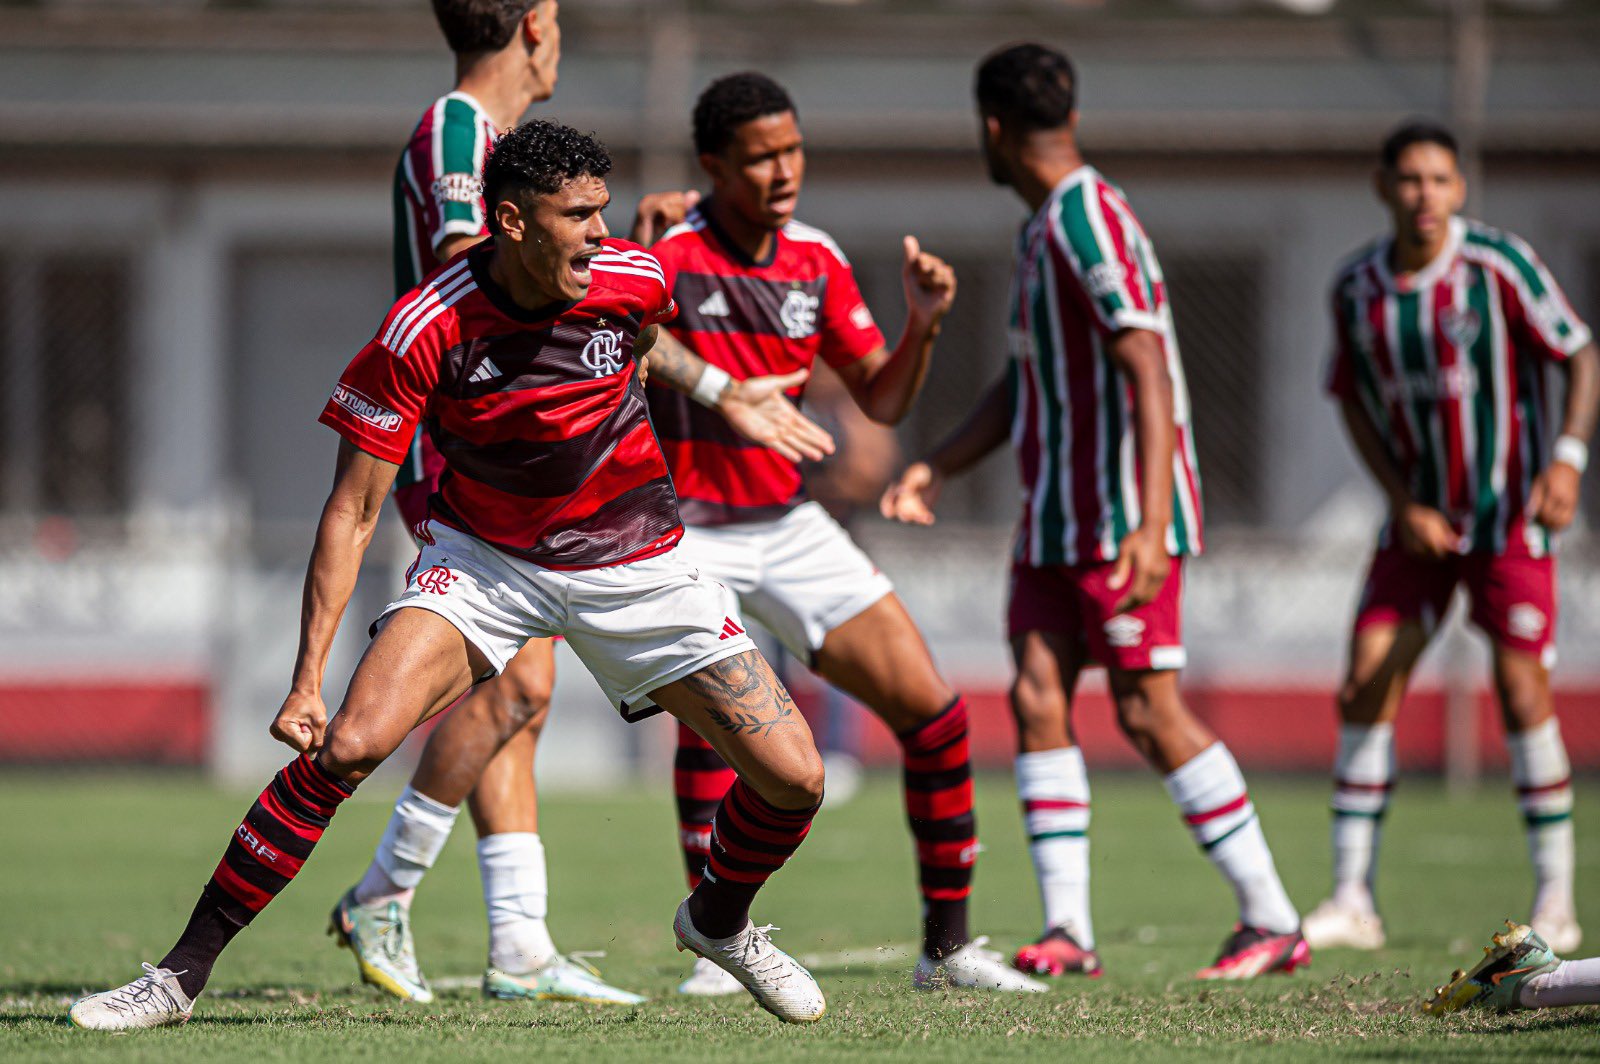 Com gol de calcanhar nos acréscimos, Flamengo está na final do Carioca Sub-20